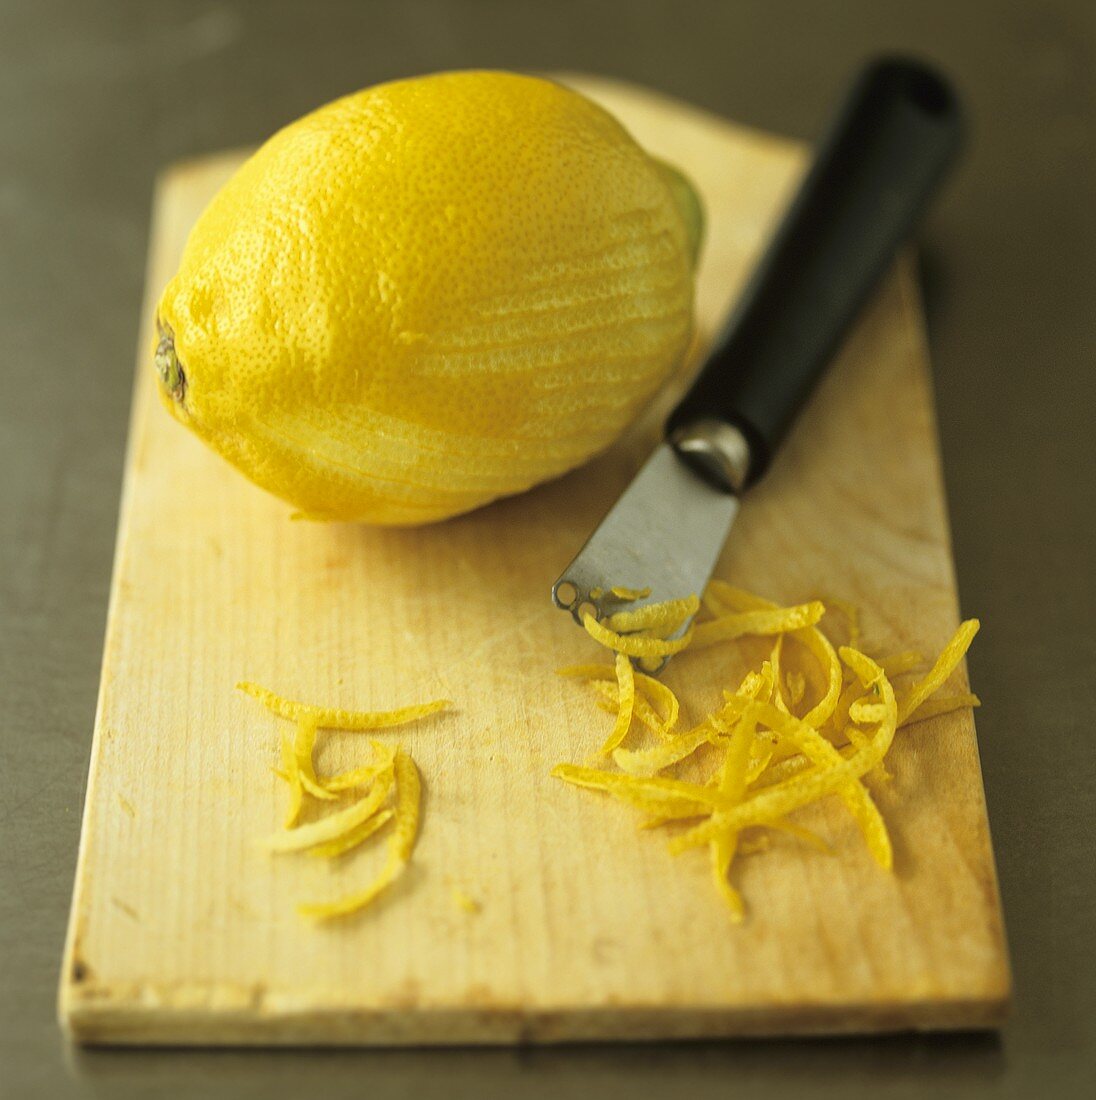 Lemon, lemon zest and zester on chopping board